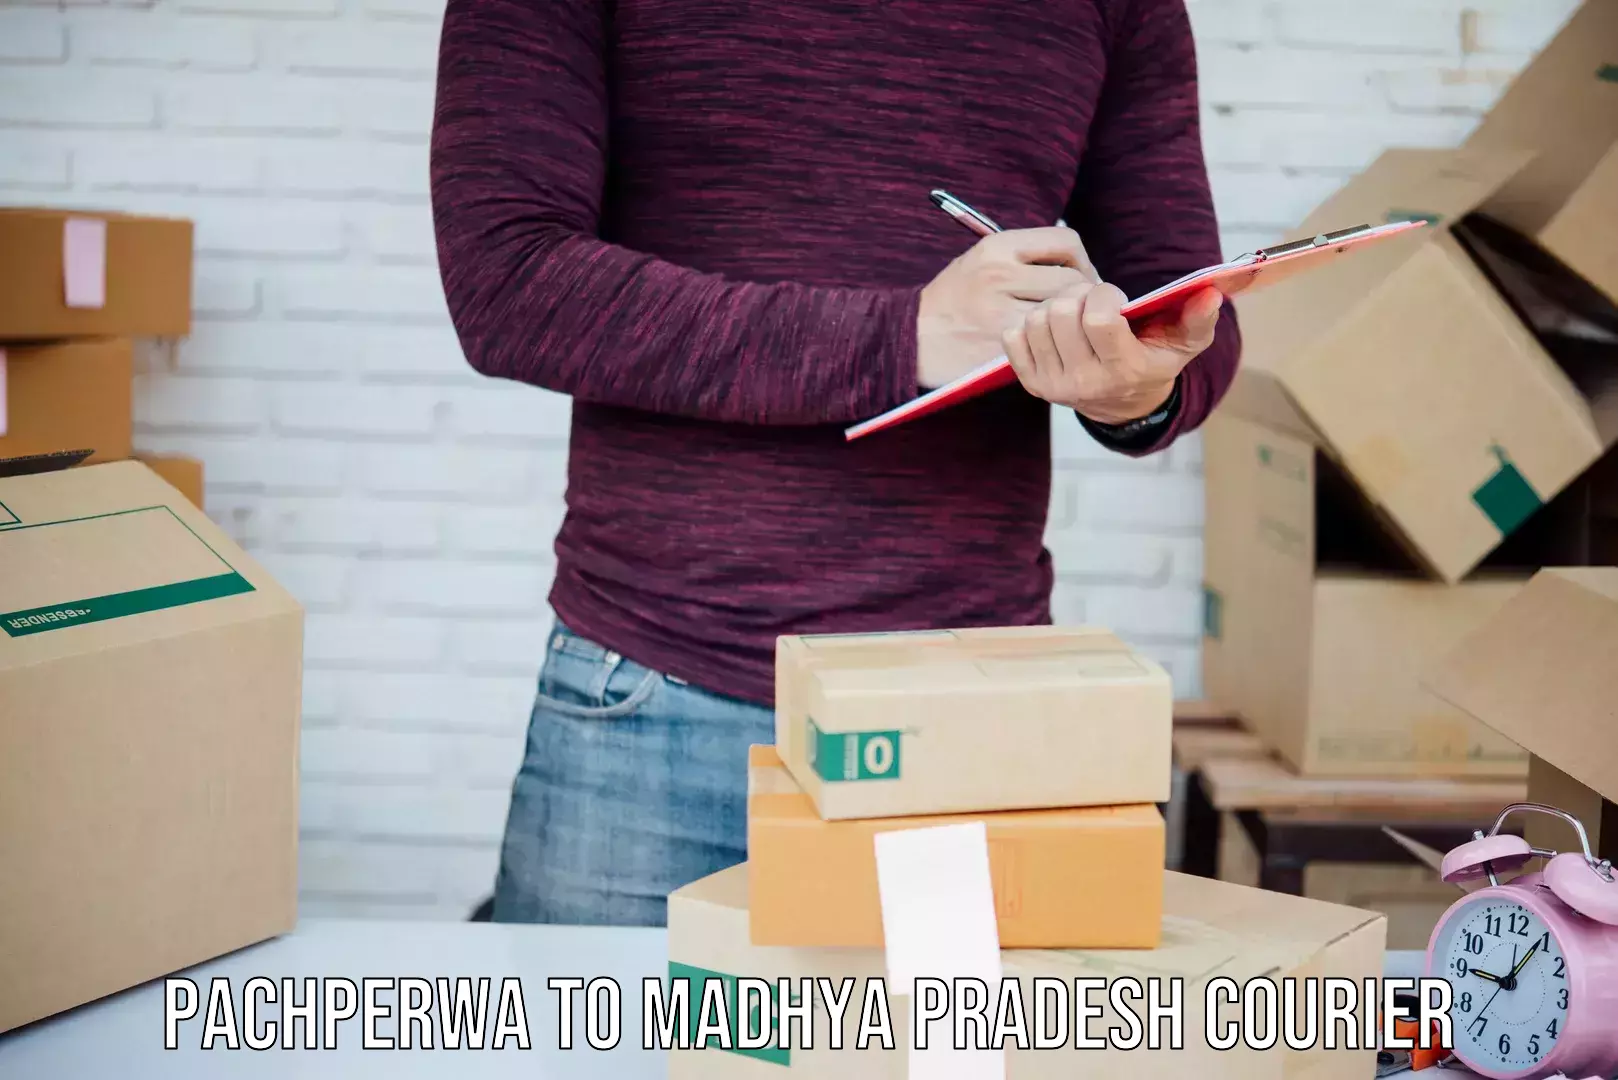 Door-to-door shipment in Pachperwa to Maheshwar